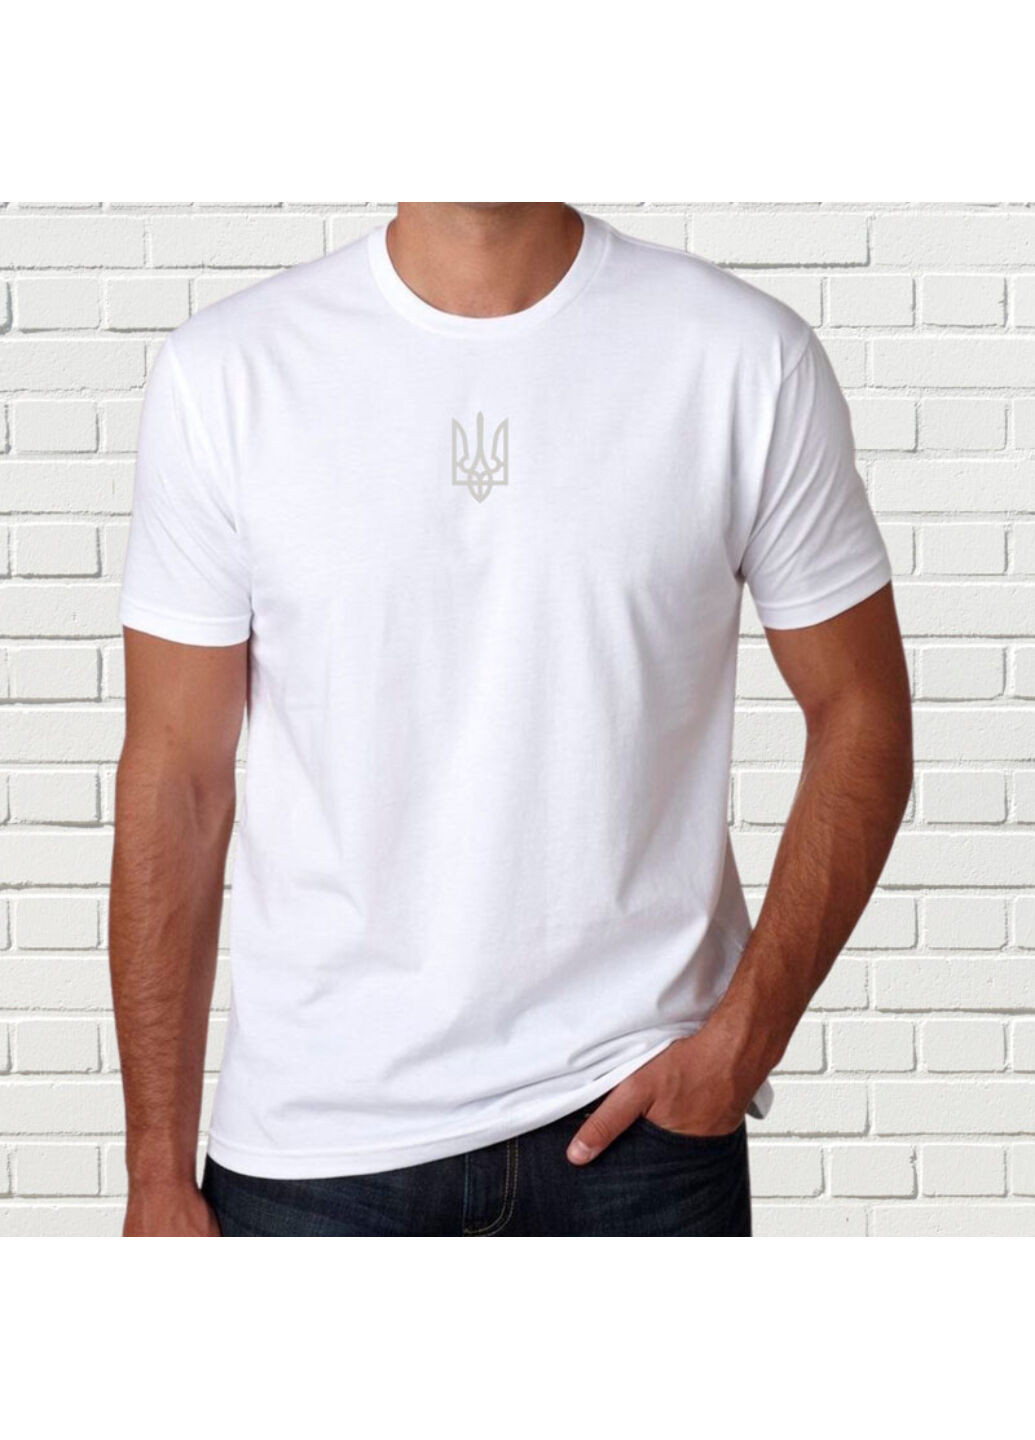 Белая футболка с вышивкой белого трезубца мужская белый s No Brand